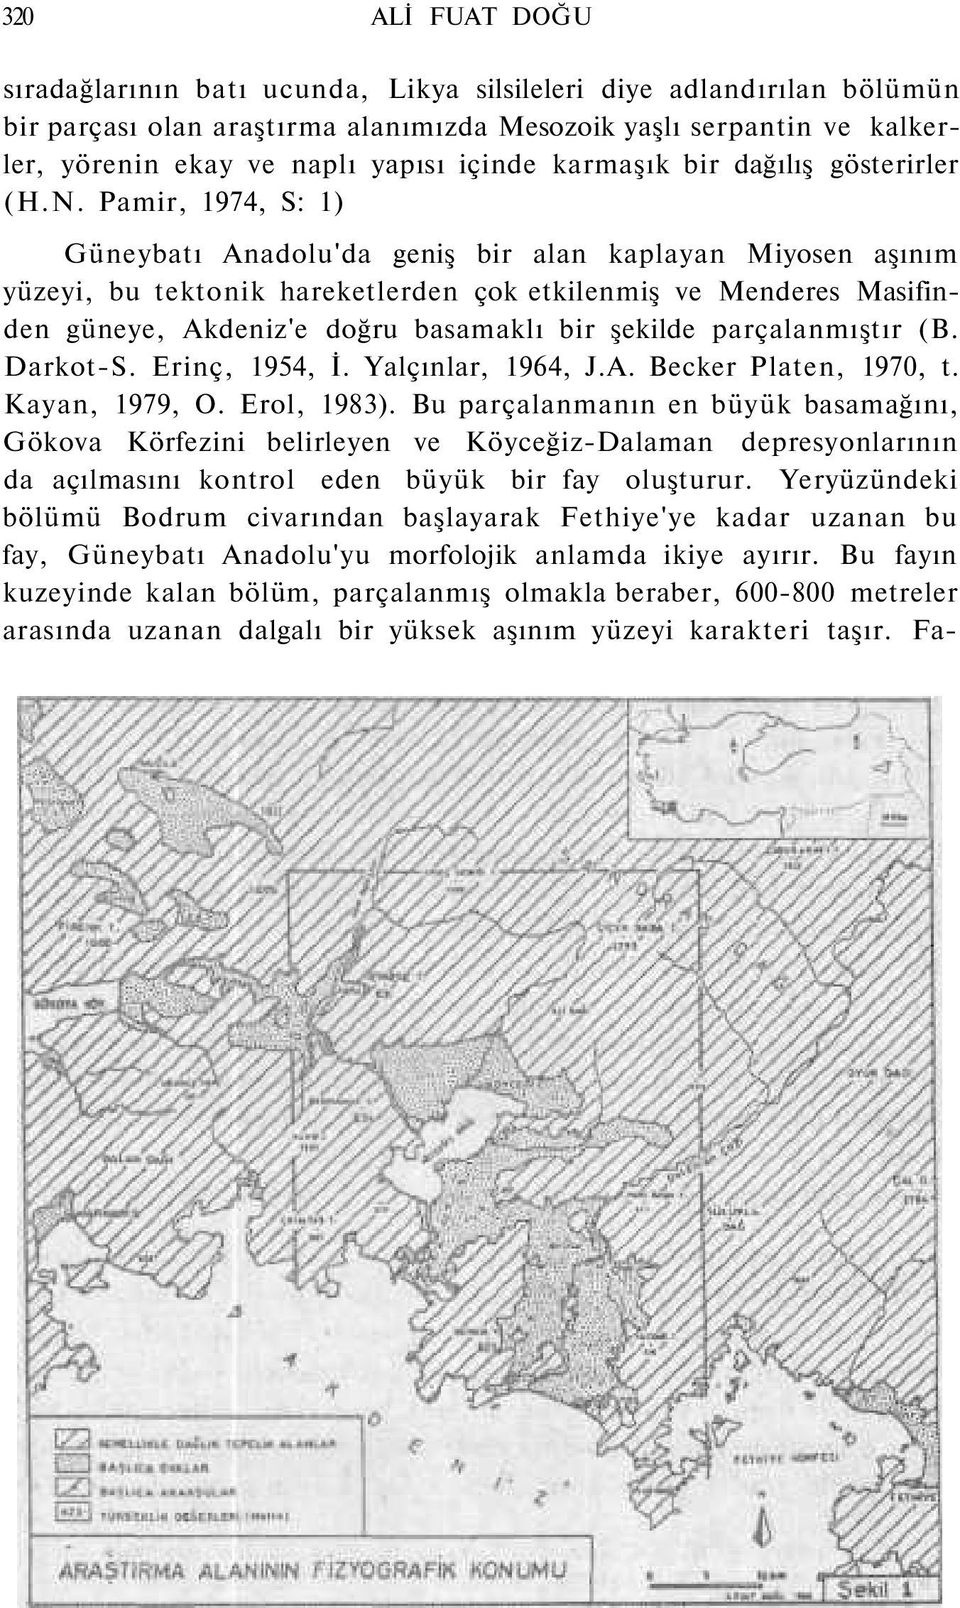 Pamir, 1974, S: 1) Güneybatı Anadolu'da geniş bir alan kaplayan Miyosen aşınım yüzeyi, bu tektonik hareketlerden çok etkilenmiş ve Menderes Masifinden güneye, Akdeniz'e doğru basamaklı bir şekilde